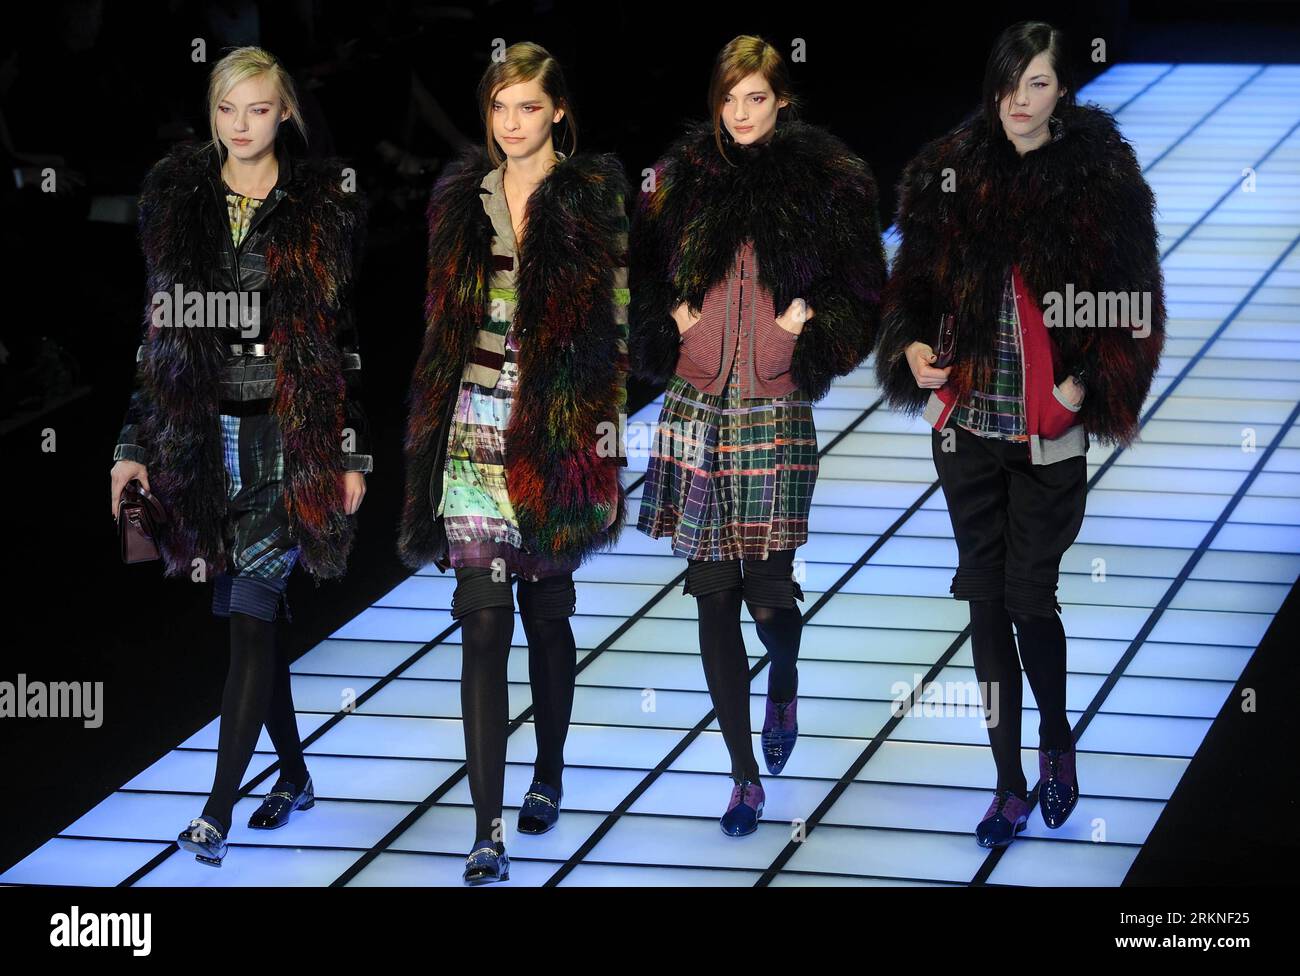 Bildnummer : 57108111 Datum : 25.02.2012 Copyright : imago/Xinhua (120226) -- MILAN, 26 février 2012 (Xinhua) -- des mannequins présentent des créations de la marque italienne Emporio Armani lors de la Fashion week de Milan vêtements pour femmes automne/hiver 2012 à Milan, Italie, 25 février 2012. (Xinhua/Wang Qingqin) (zhs) ITALY-MILAN-FASHION WEEK-EMPORIO ARMANI PUBLICATIONxNOTxINxCHN Kultur Entertainment Fashion Modenschau Modewoche Mailand Damenmode xdp x0x premiumd 2012 quer 57108111 Date 25 02 2012 Copyright Imago XINHUA Milan Fév 26 2012 XINHUA Models présentent des créations de la marque de mode italienne Emporio AR Banque D'Images